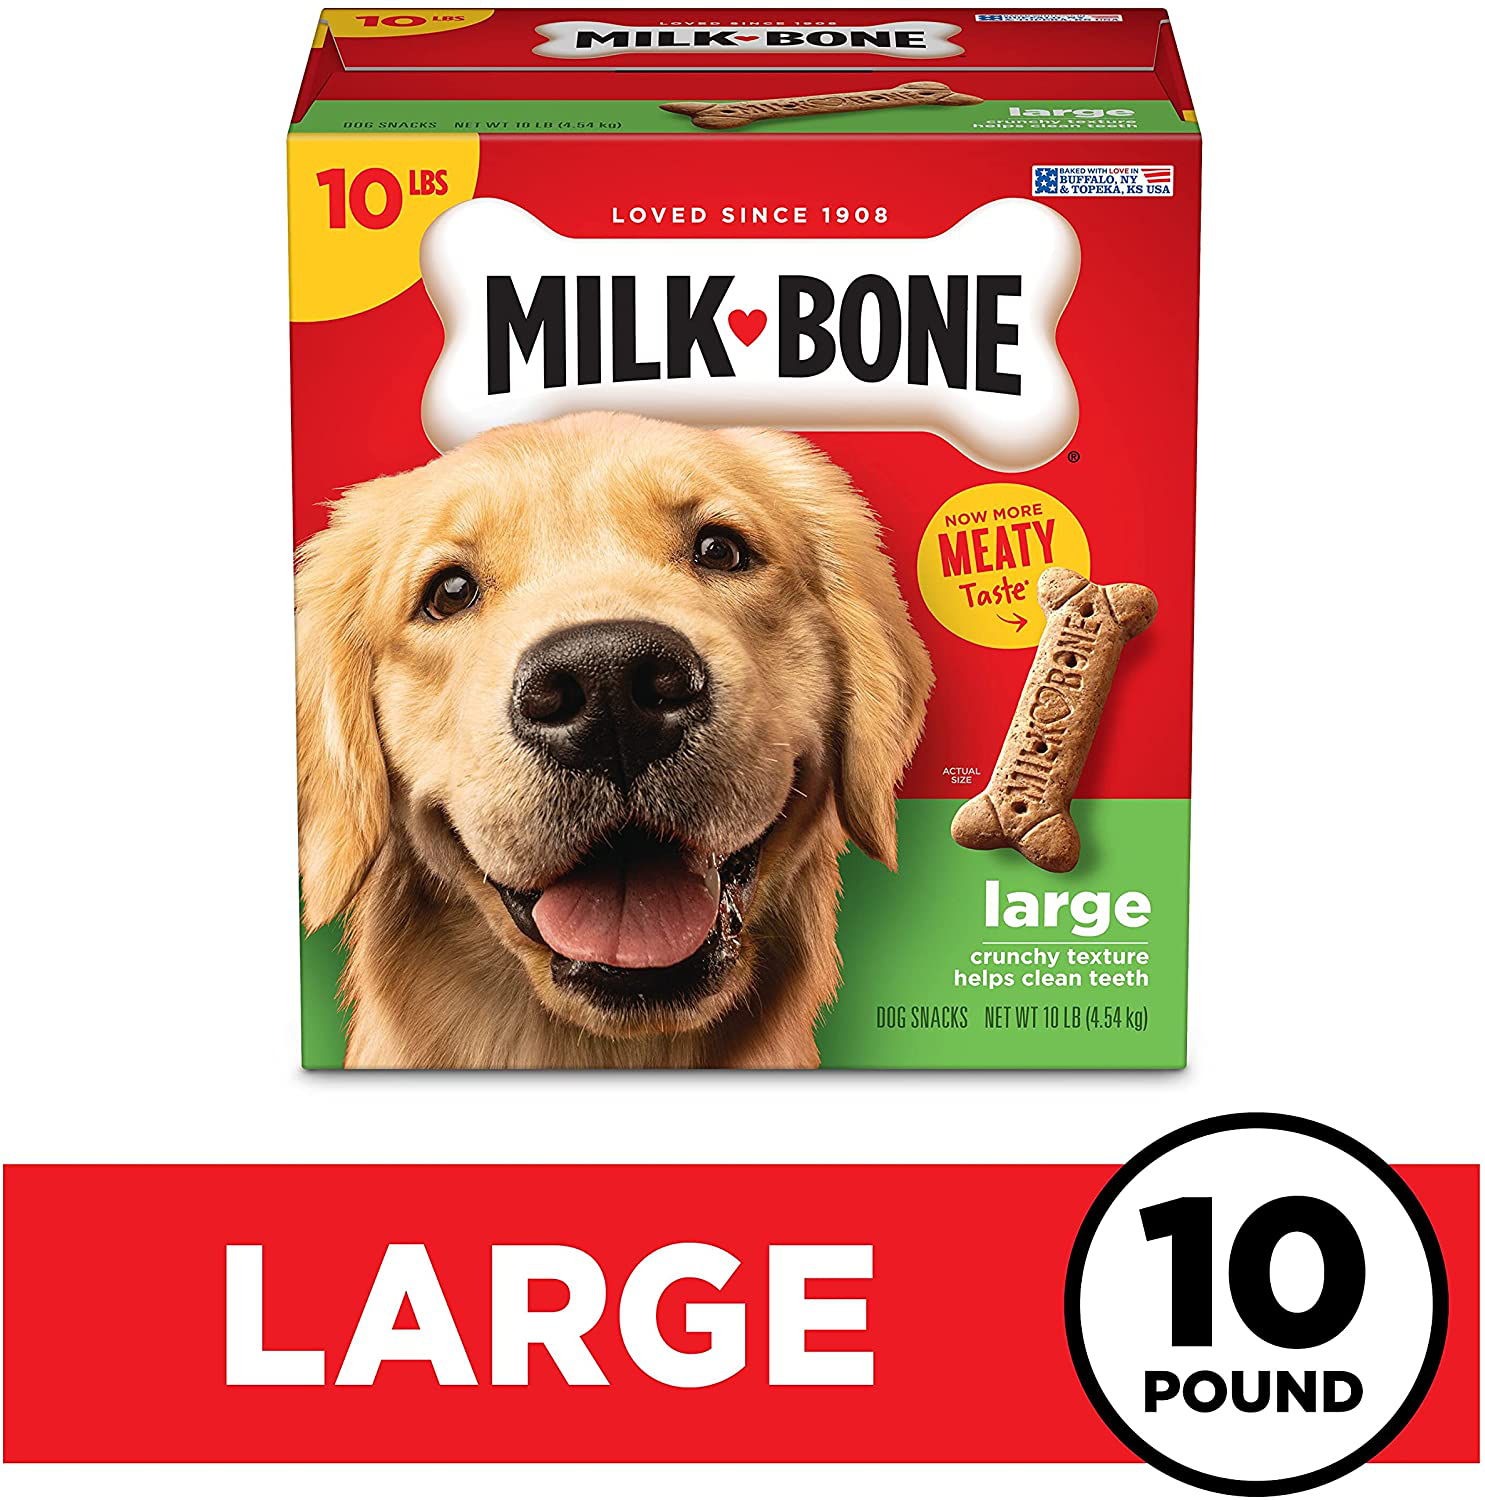 Milk-Bone Original Dog Treat Biscuits, Crunchy Texture Helps Clean Teeth Animals & Pet Supplies > Pet Supplies > Dog Supplies > Dog Treats Milk-Bone   